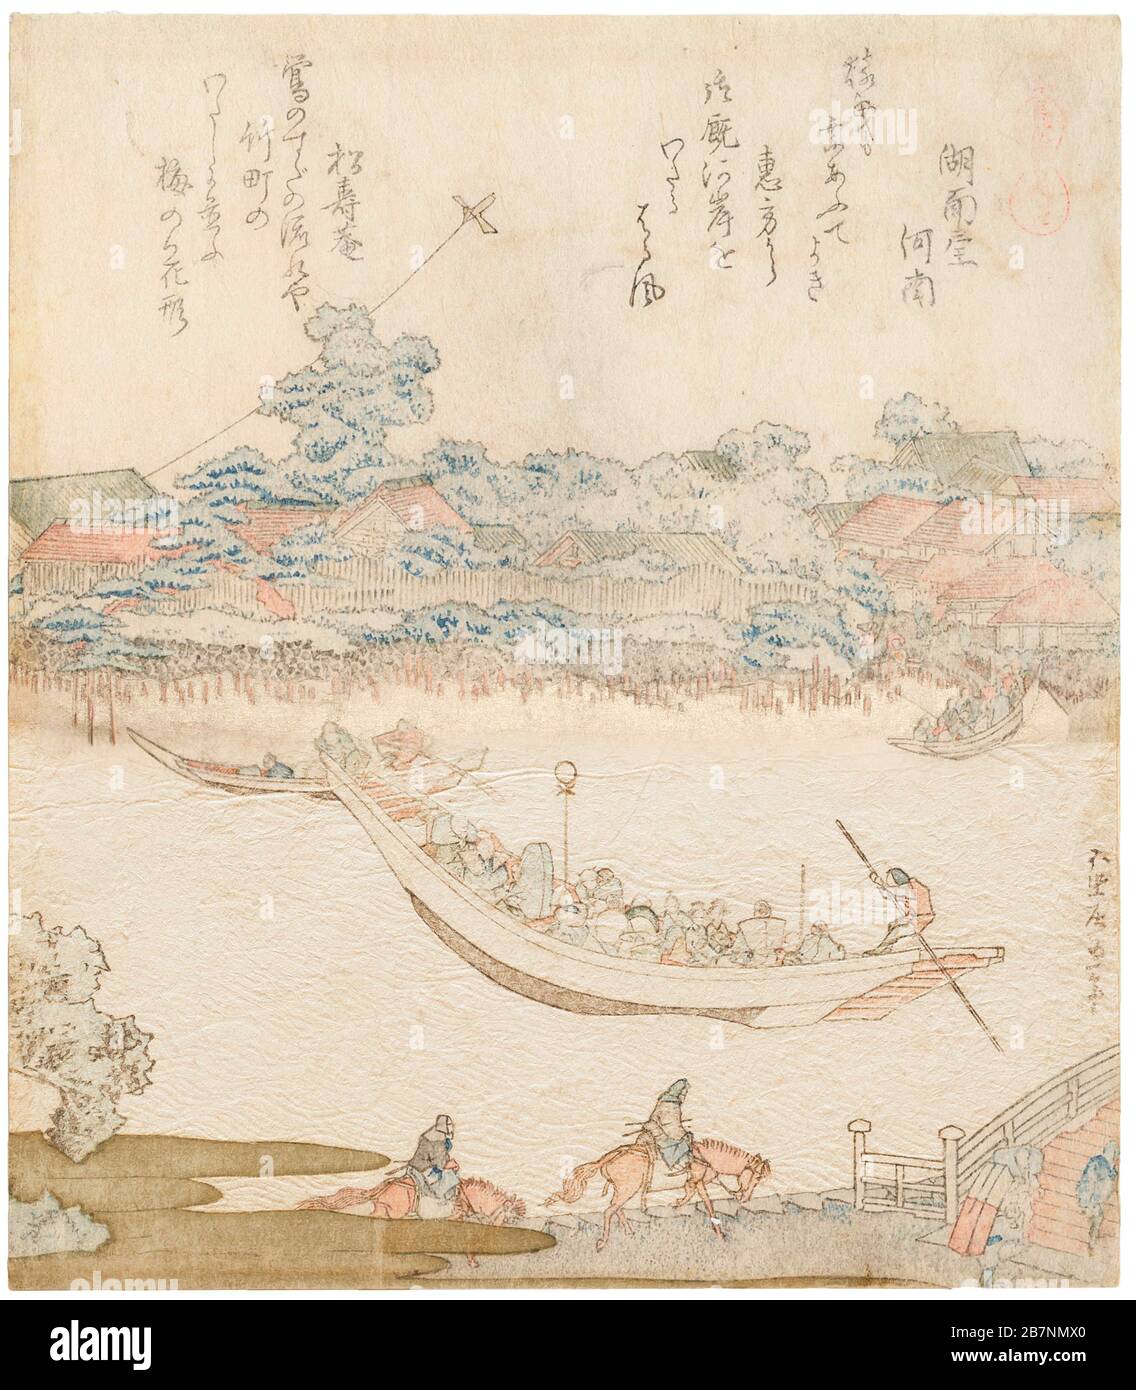 Les rives de la rivière Sumida, Komatomeishi. Triptyque de la série Umazukushi (une série de chevaux), partie centrale, 1822. Collection privée. Banque D'Images